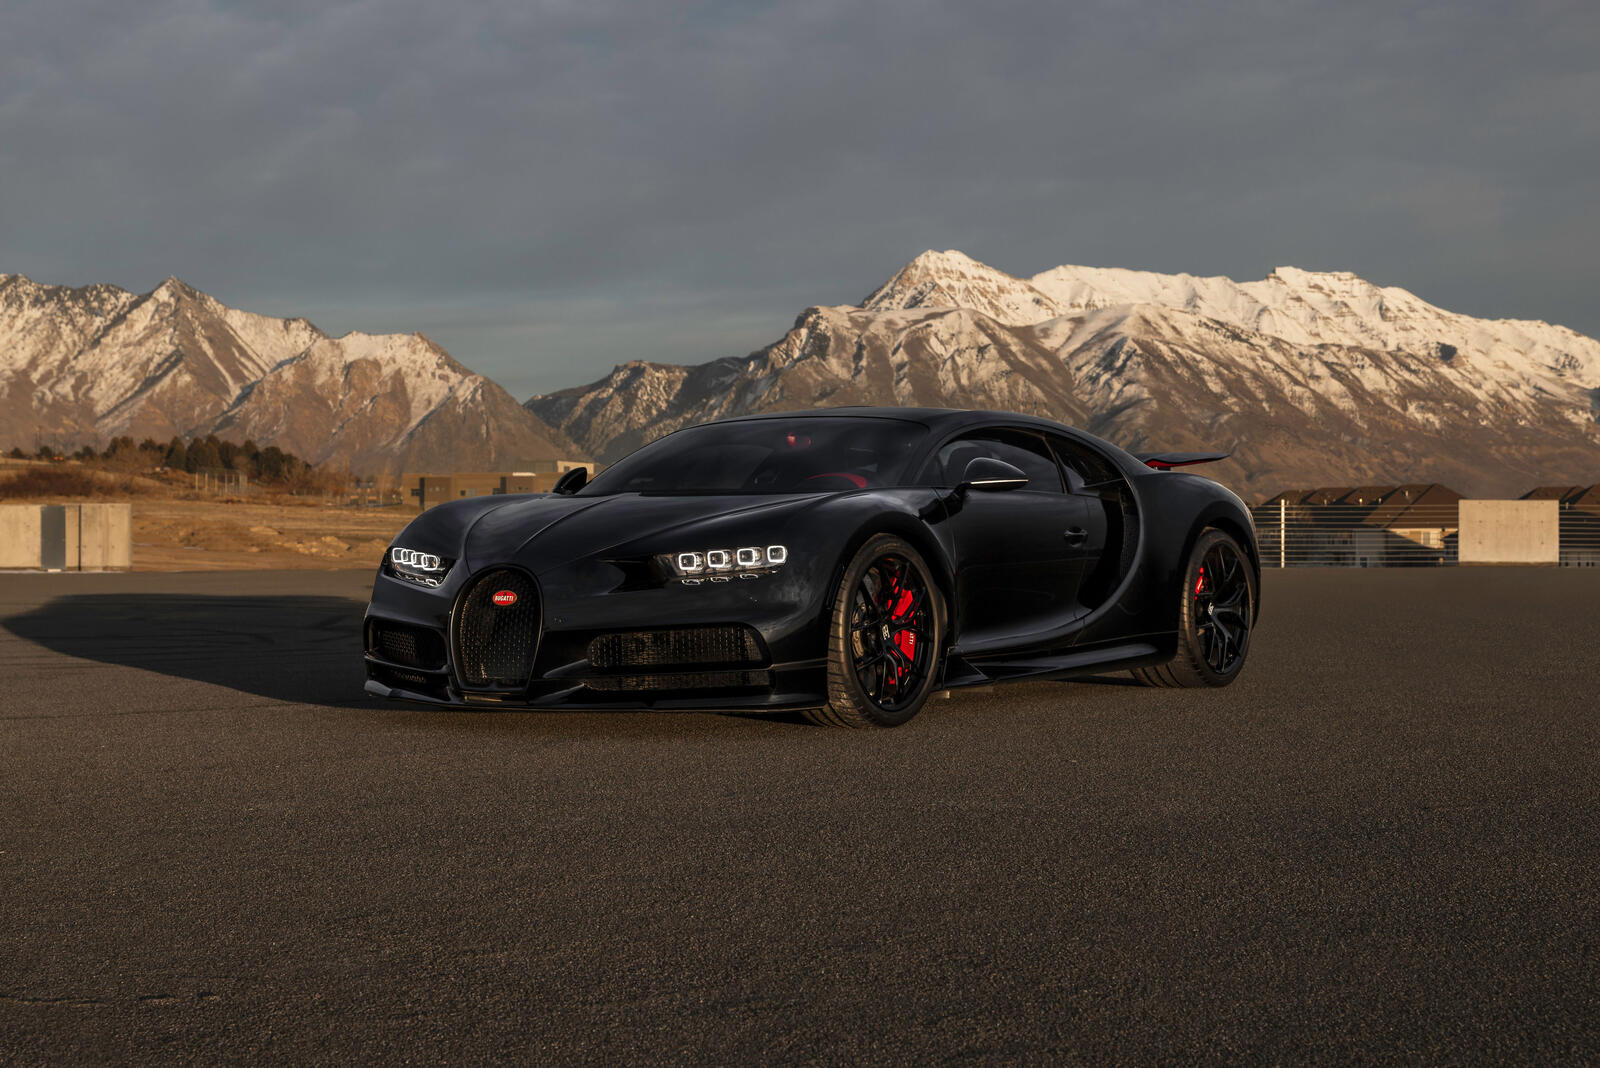 Free photo A black Bugatti Chiron